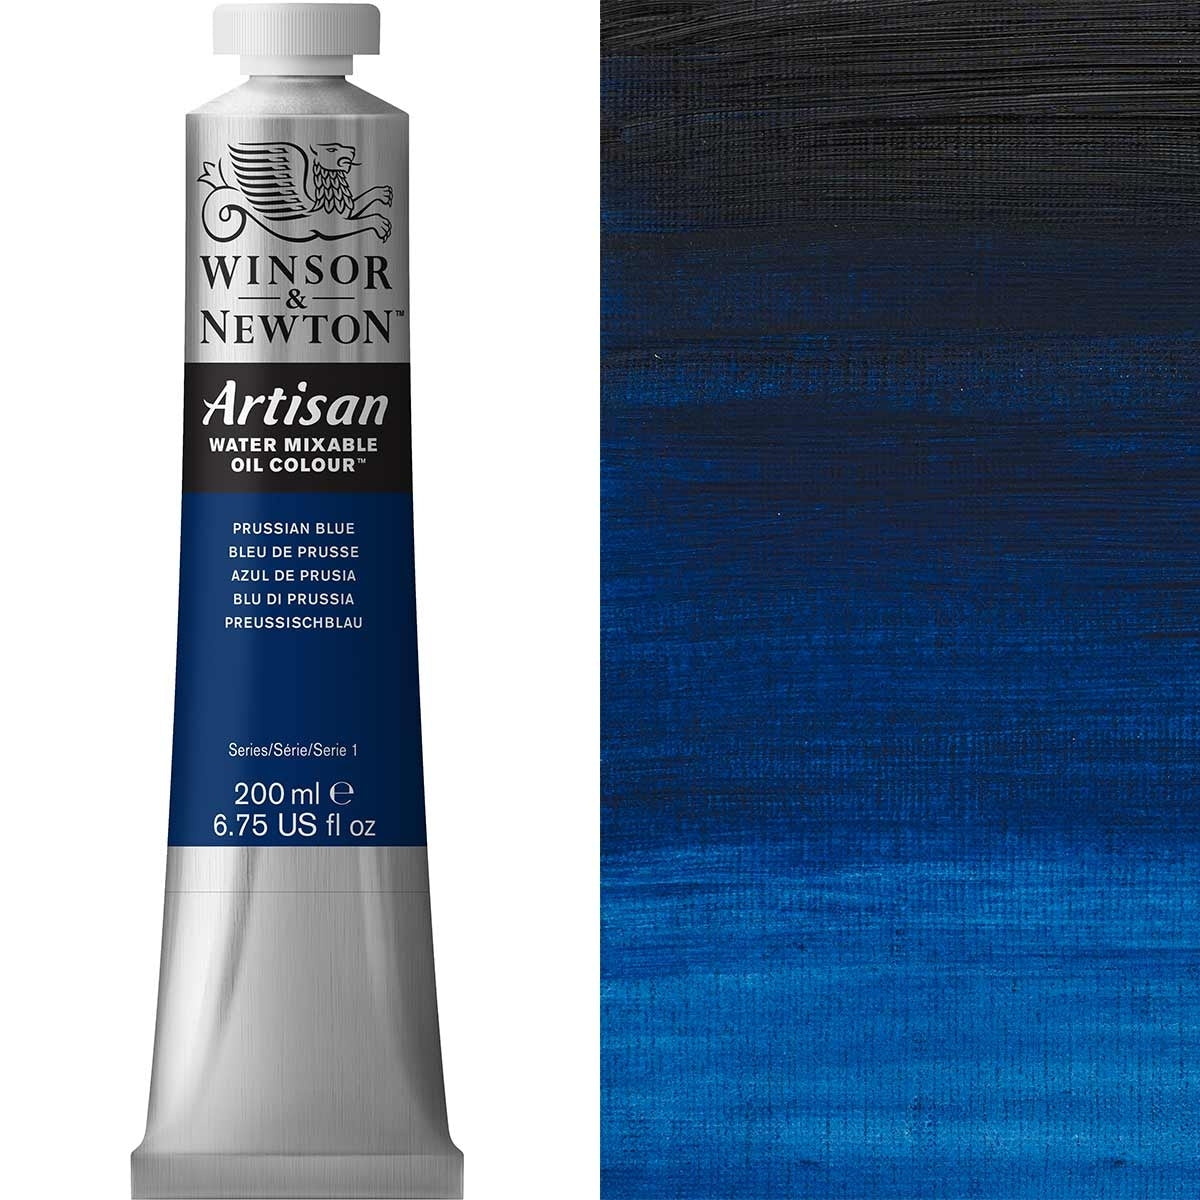 Winsor e Newton - Watermixable di colore olio artigianale - 200 ml - blu prussiano